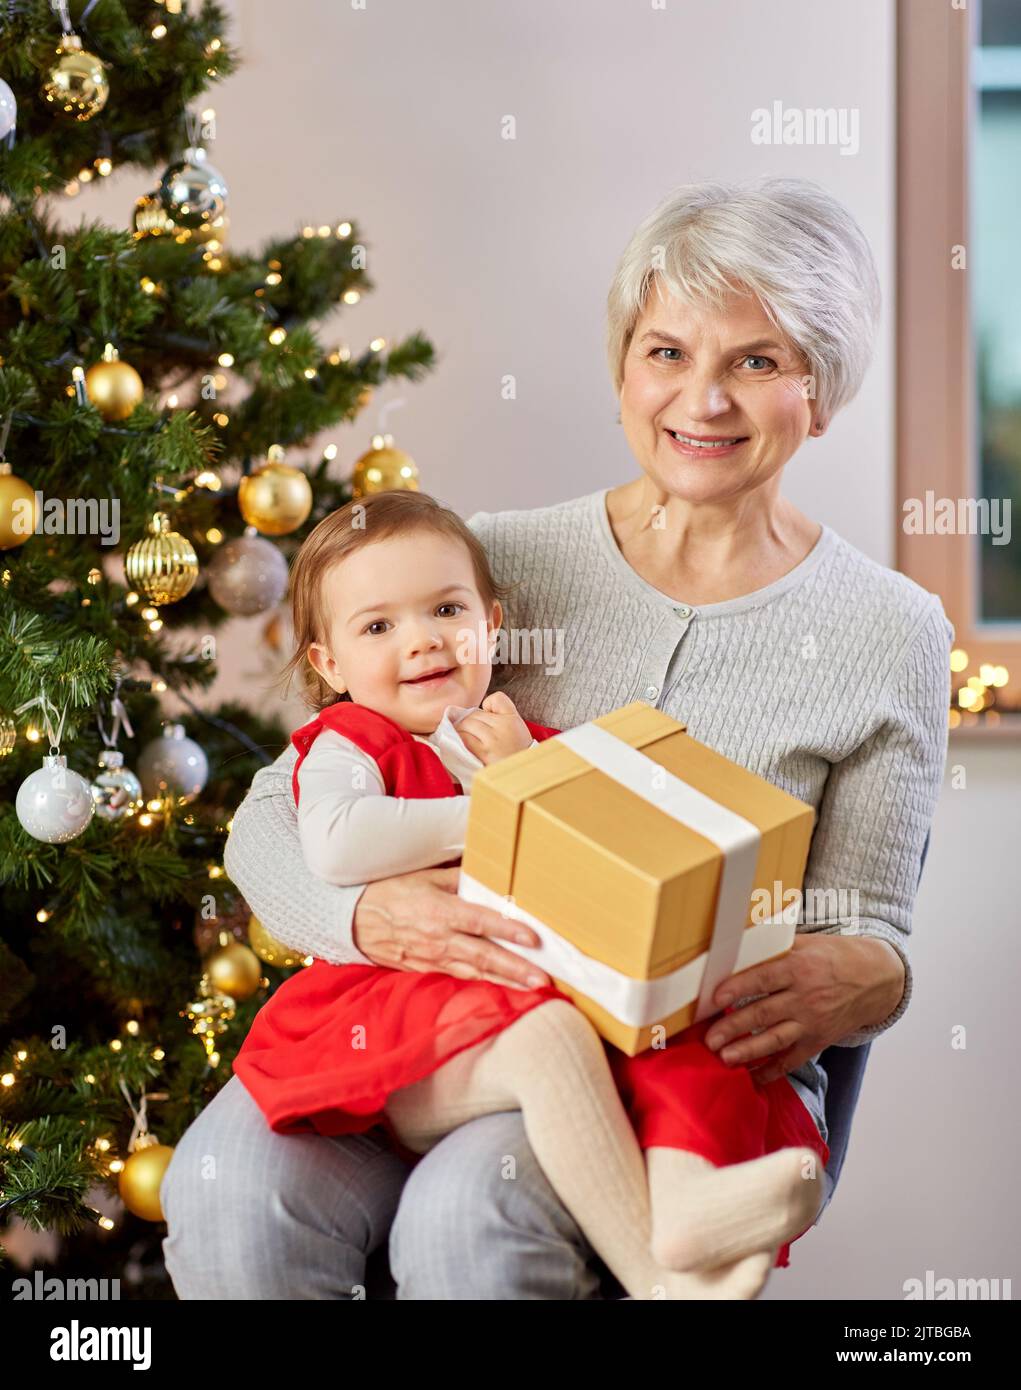 https://c8.alamy.com/comp/2JTBGBA/grandmother-and-baby-girl-with-christmas-gift-2JTBGBA.jpg